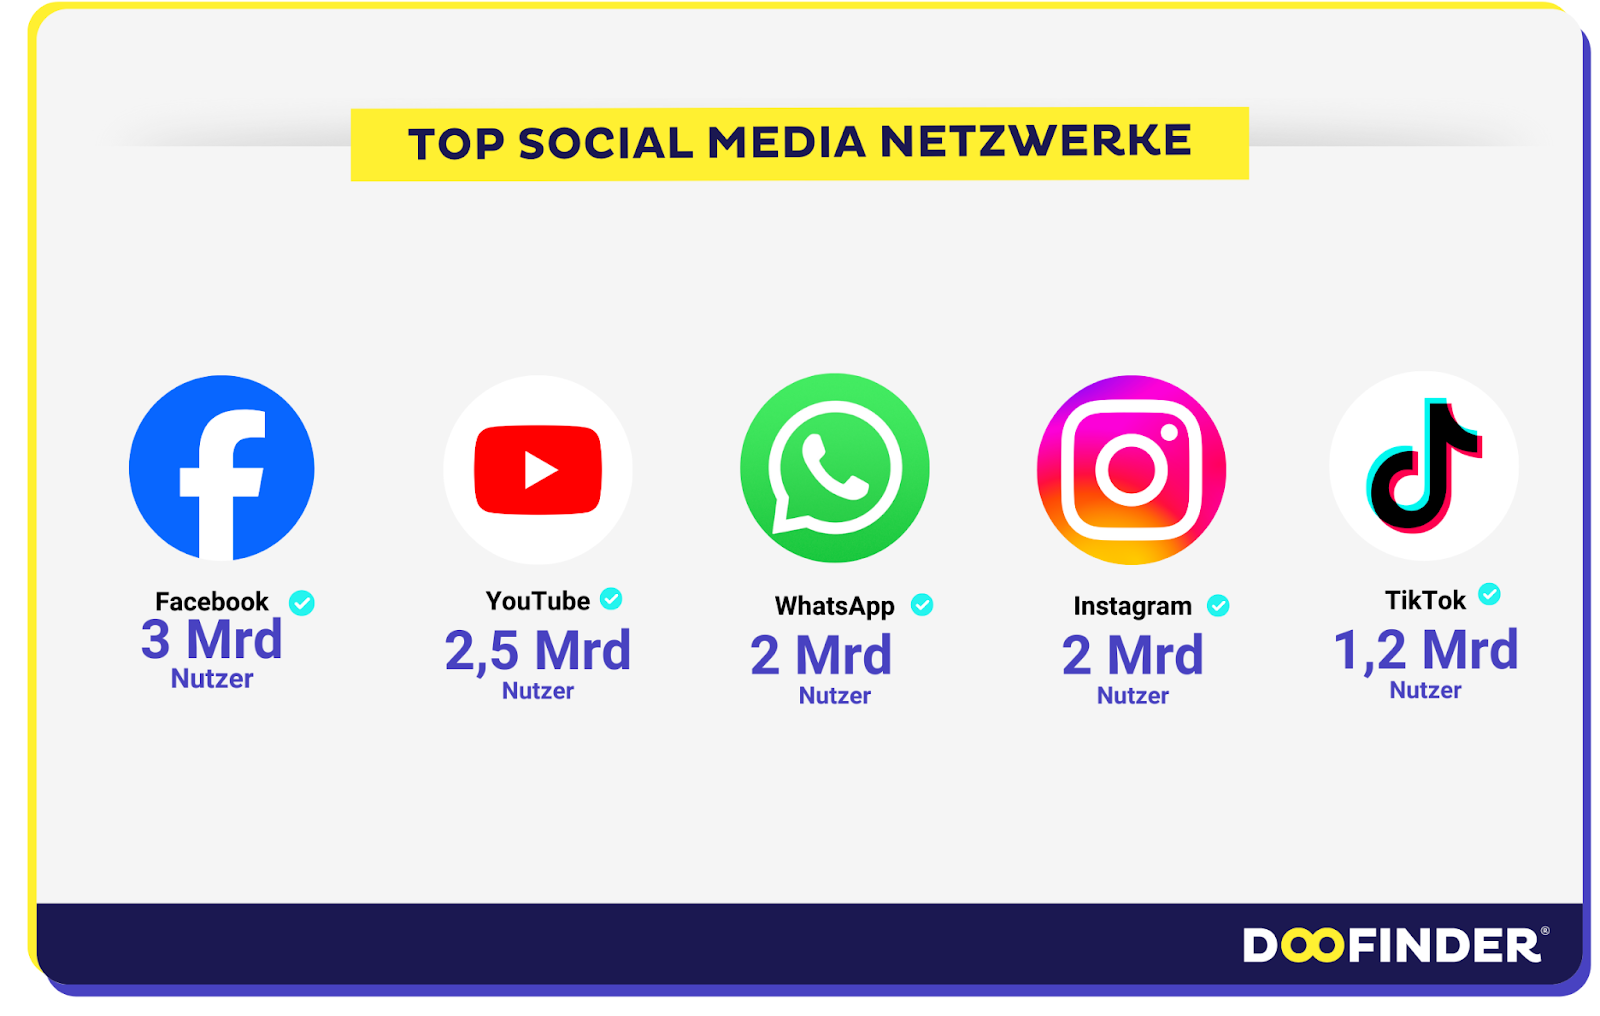 Welches sind die am häufigsten genutzten sozialen Netzwerke der Welt?